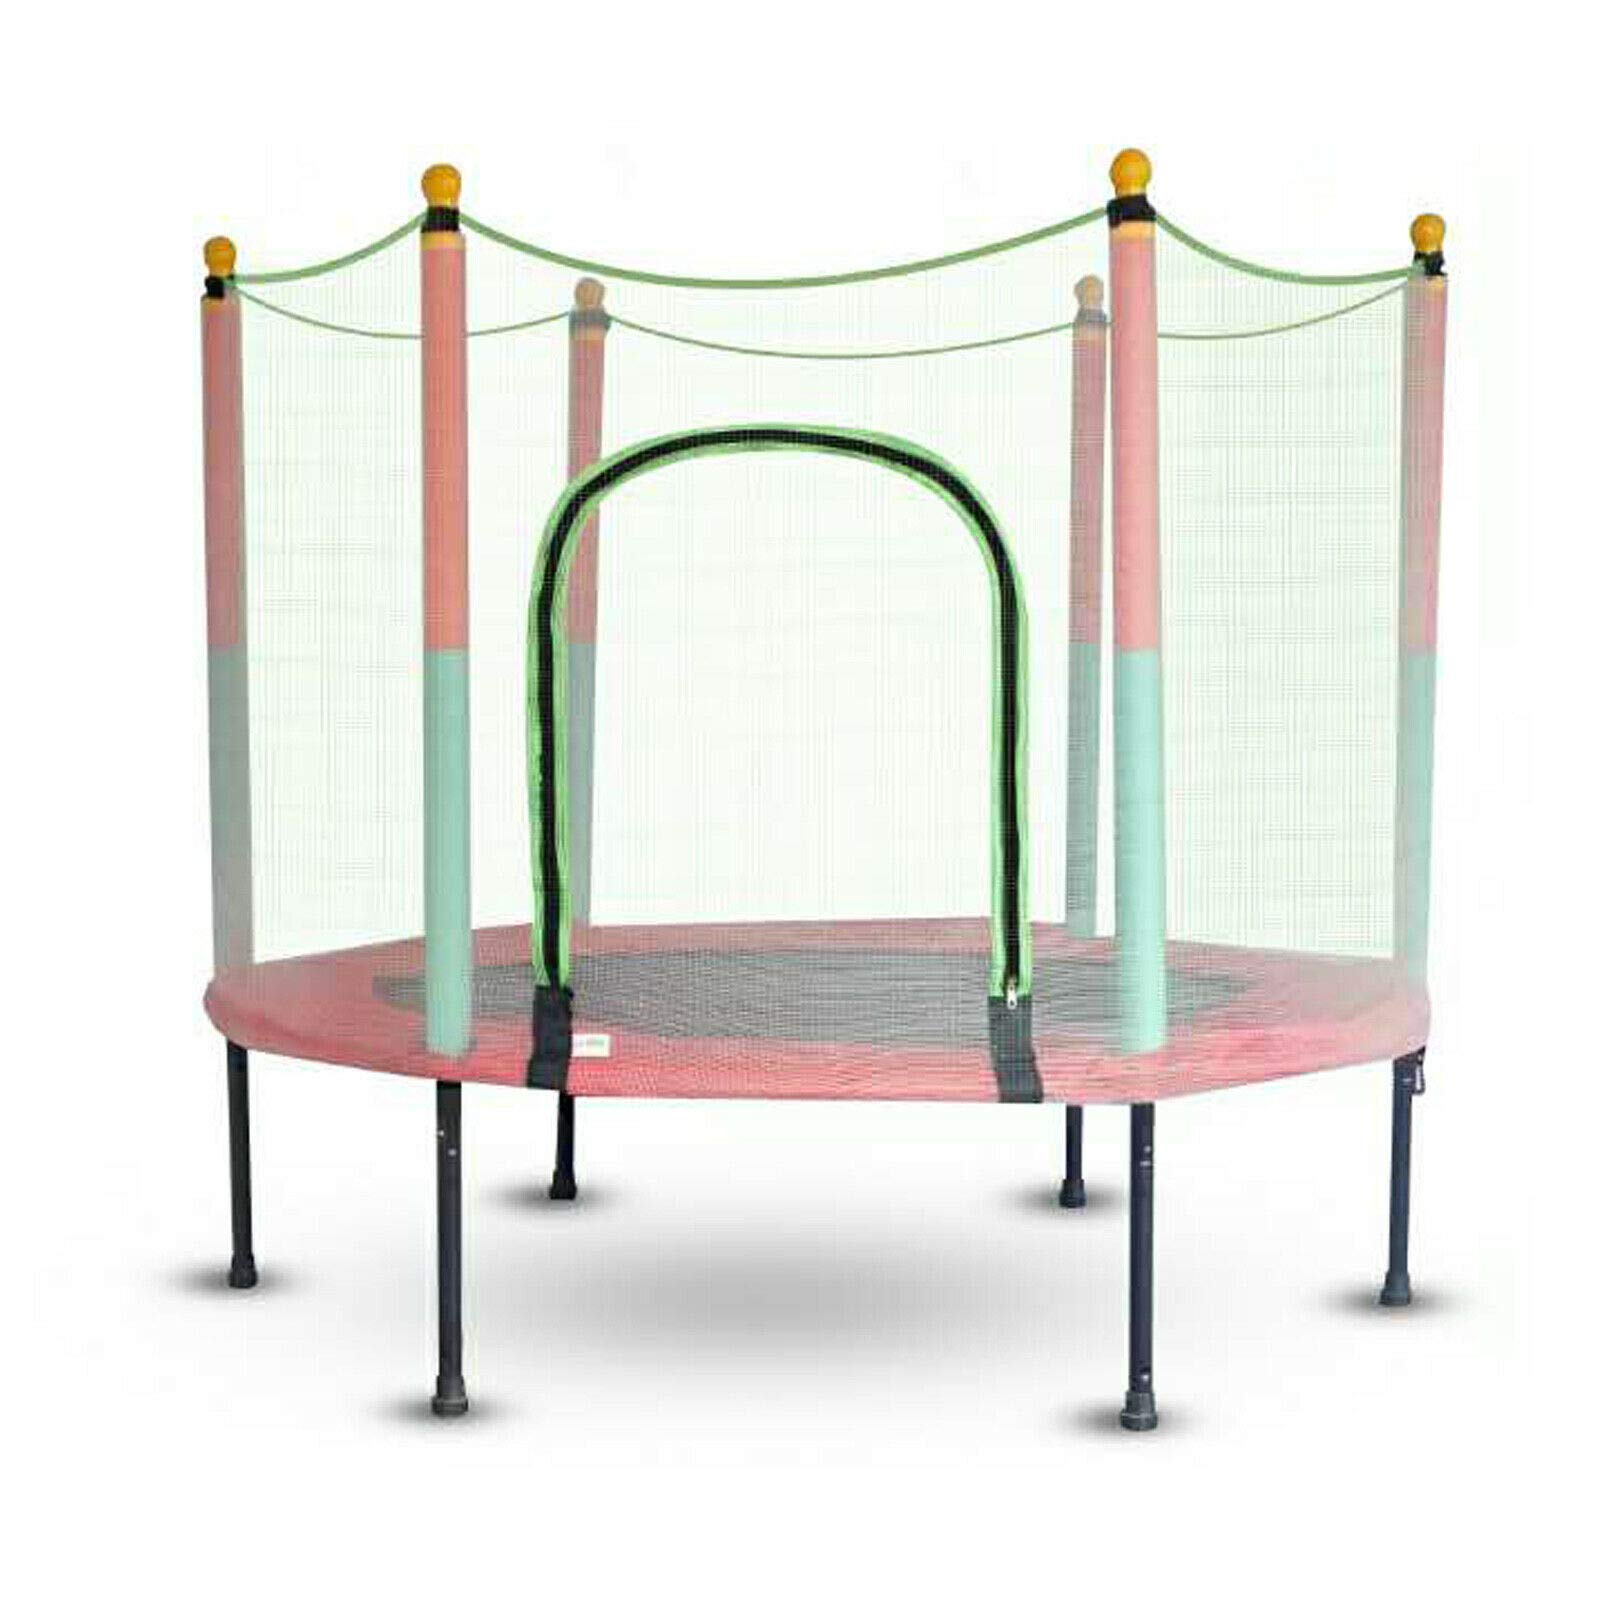 Trampoline de jardin pour enfant de 140 cm avec filet - Pour l'extérieur et l'intérieur - 200 kg - Recommandation : convient pour 2 à 3 enfants